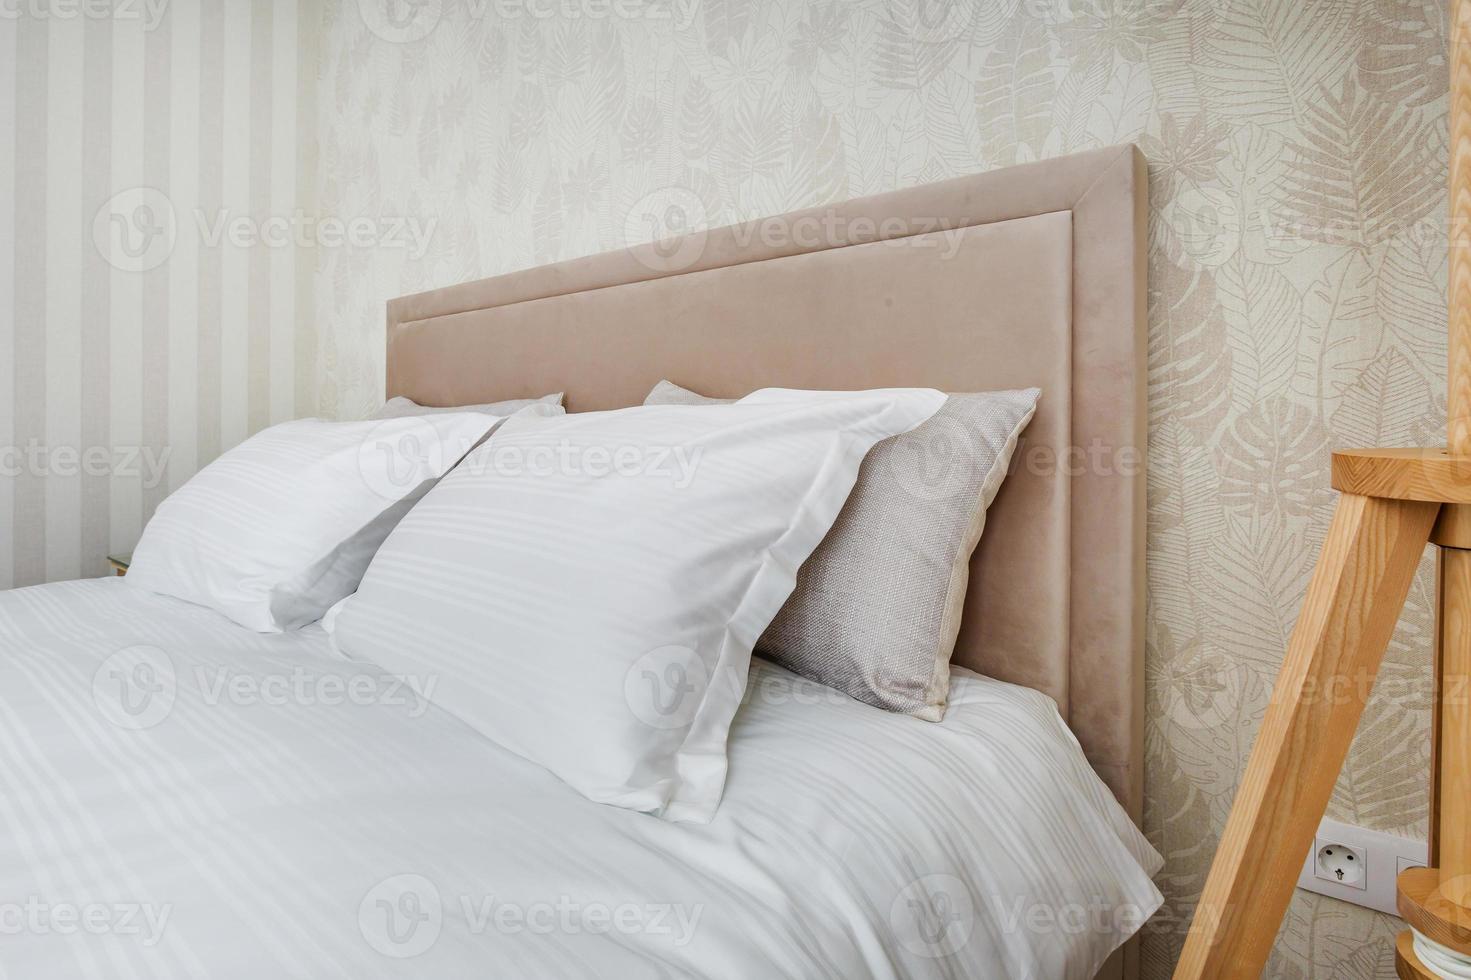 almofadas na cama principal no interior do quarto de luxo moderno em estúdios em estilo de cor clara foto